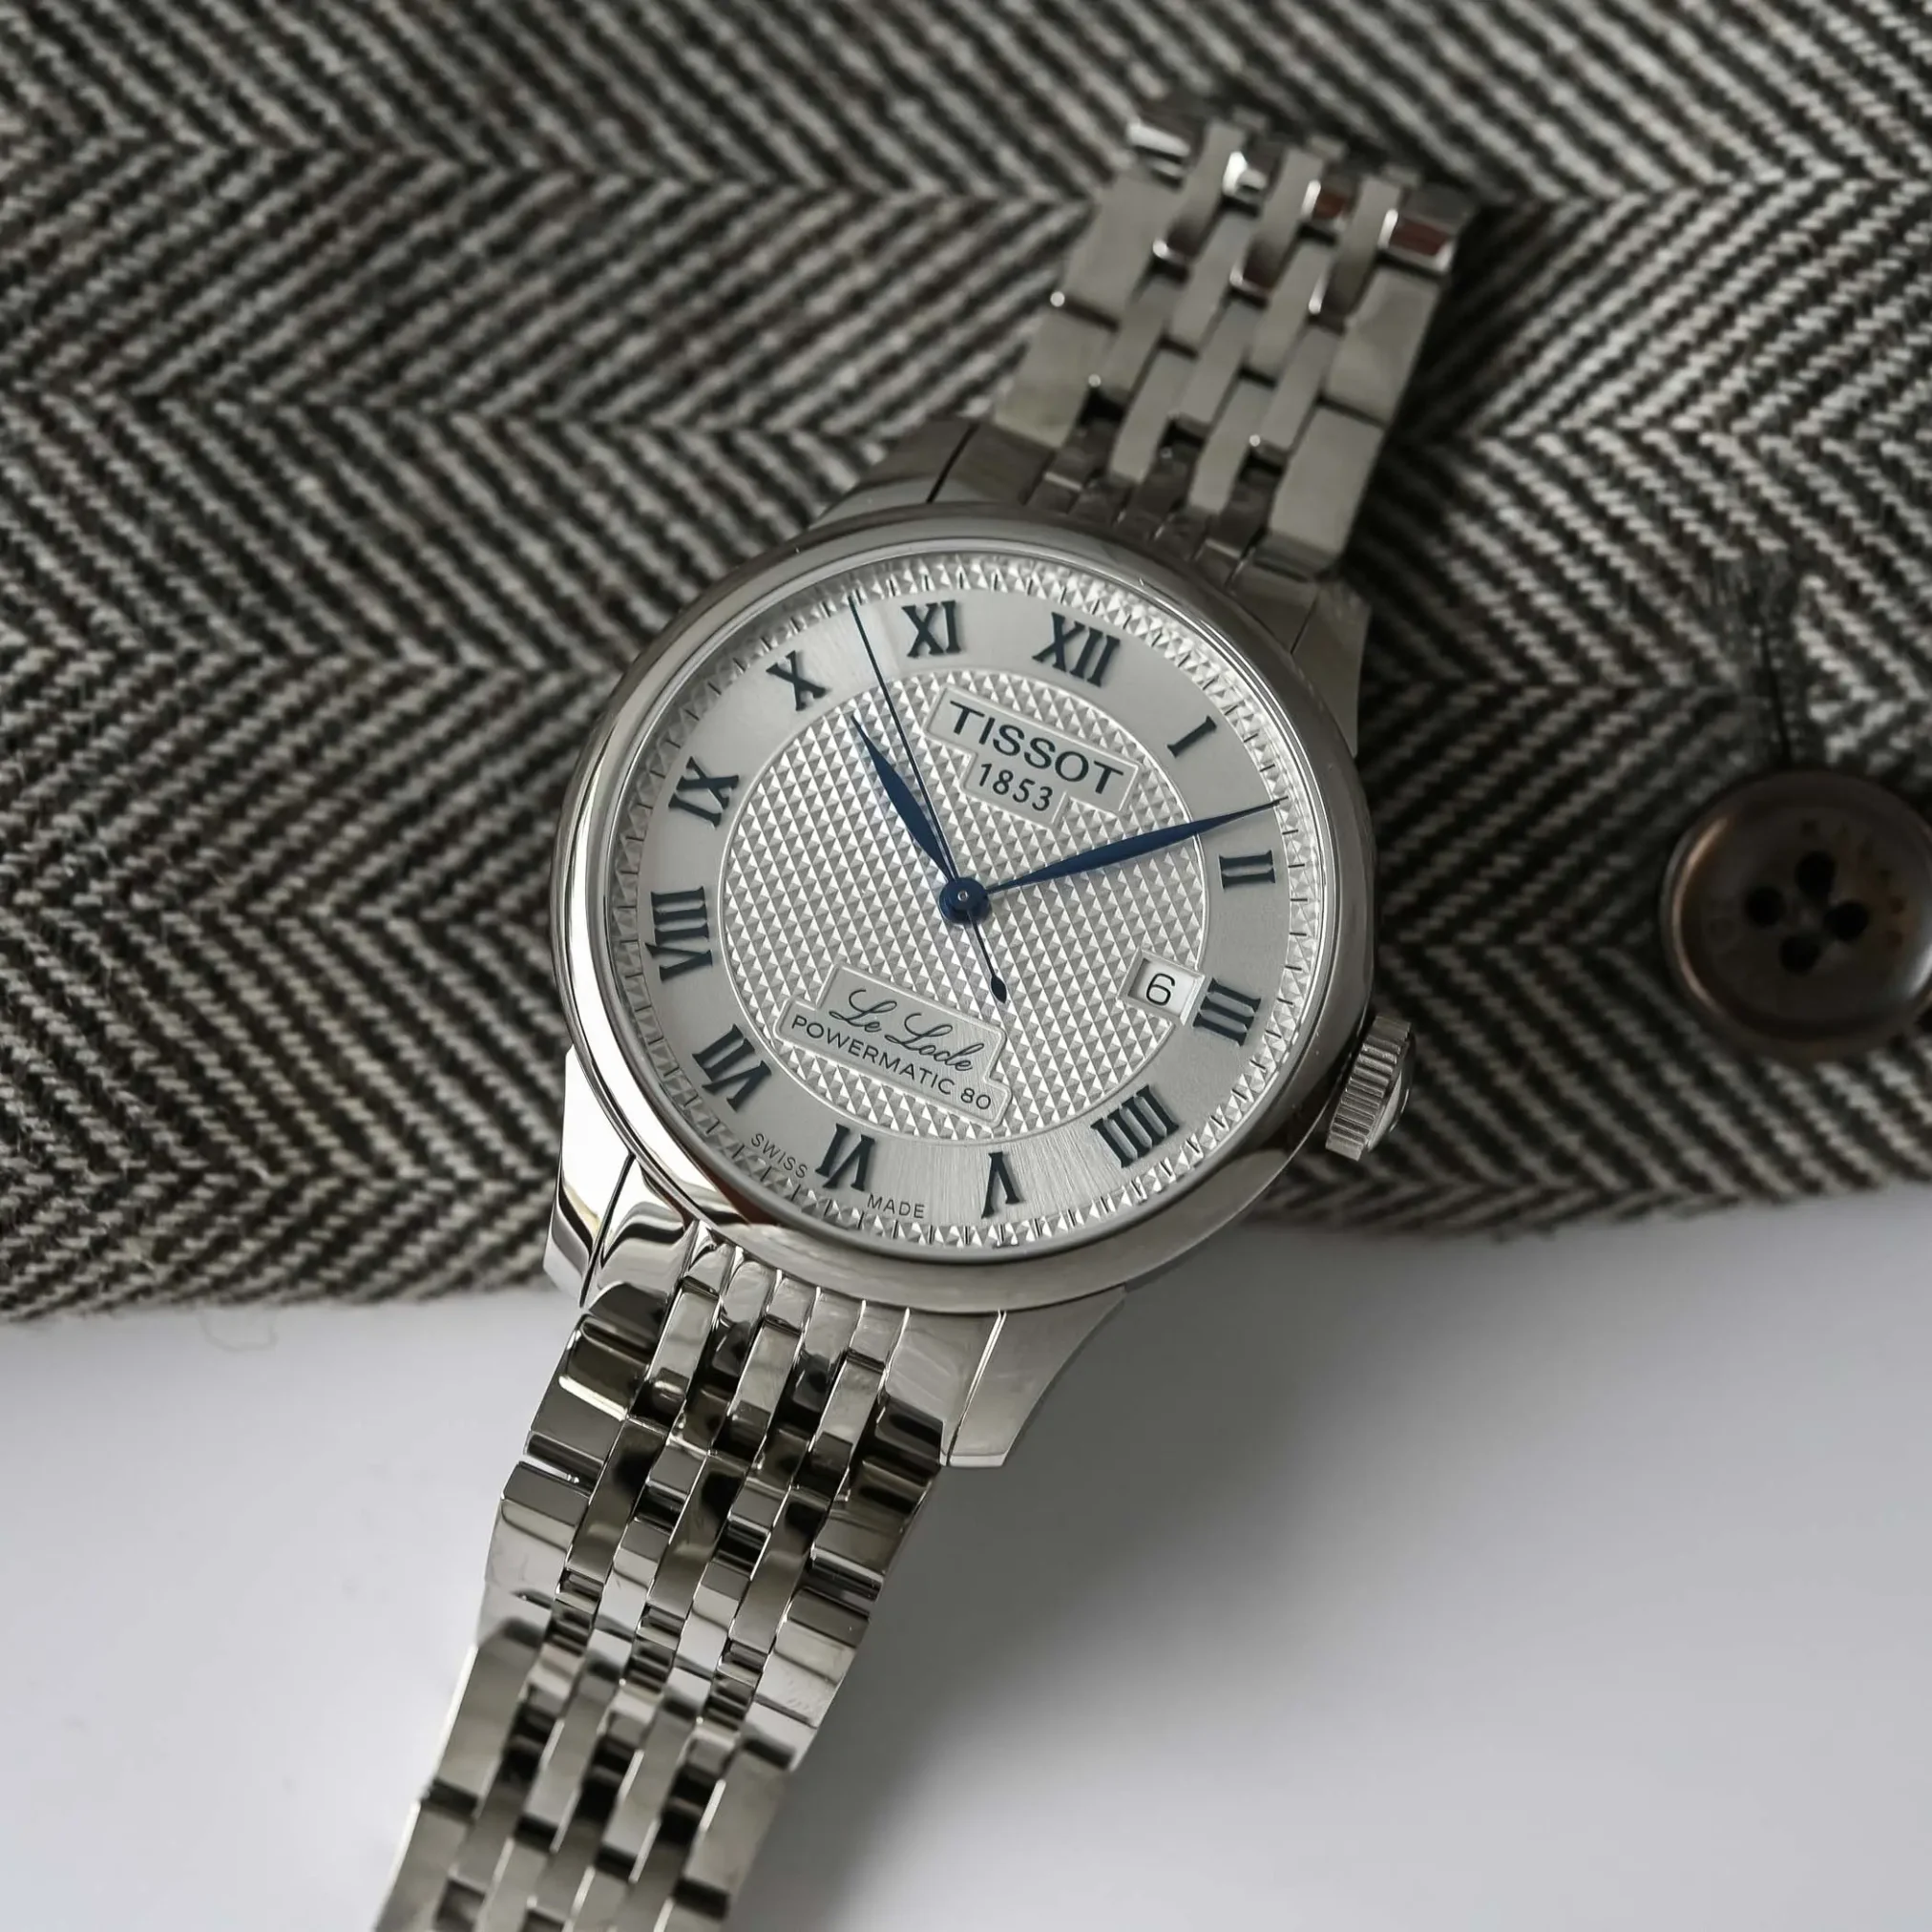 Đồng hồ Tissot Le Locle Powermatic 80 20th Anniversary T006.407.11.033.03 mặt số màu bạc. Dây đeo bằng da và thép. Thân vỏ bằng thép.